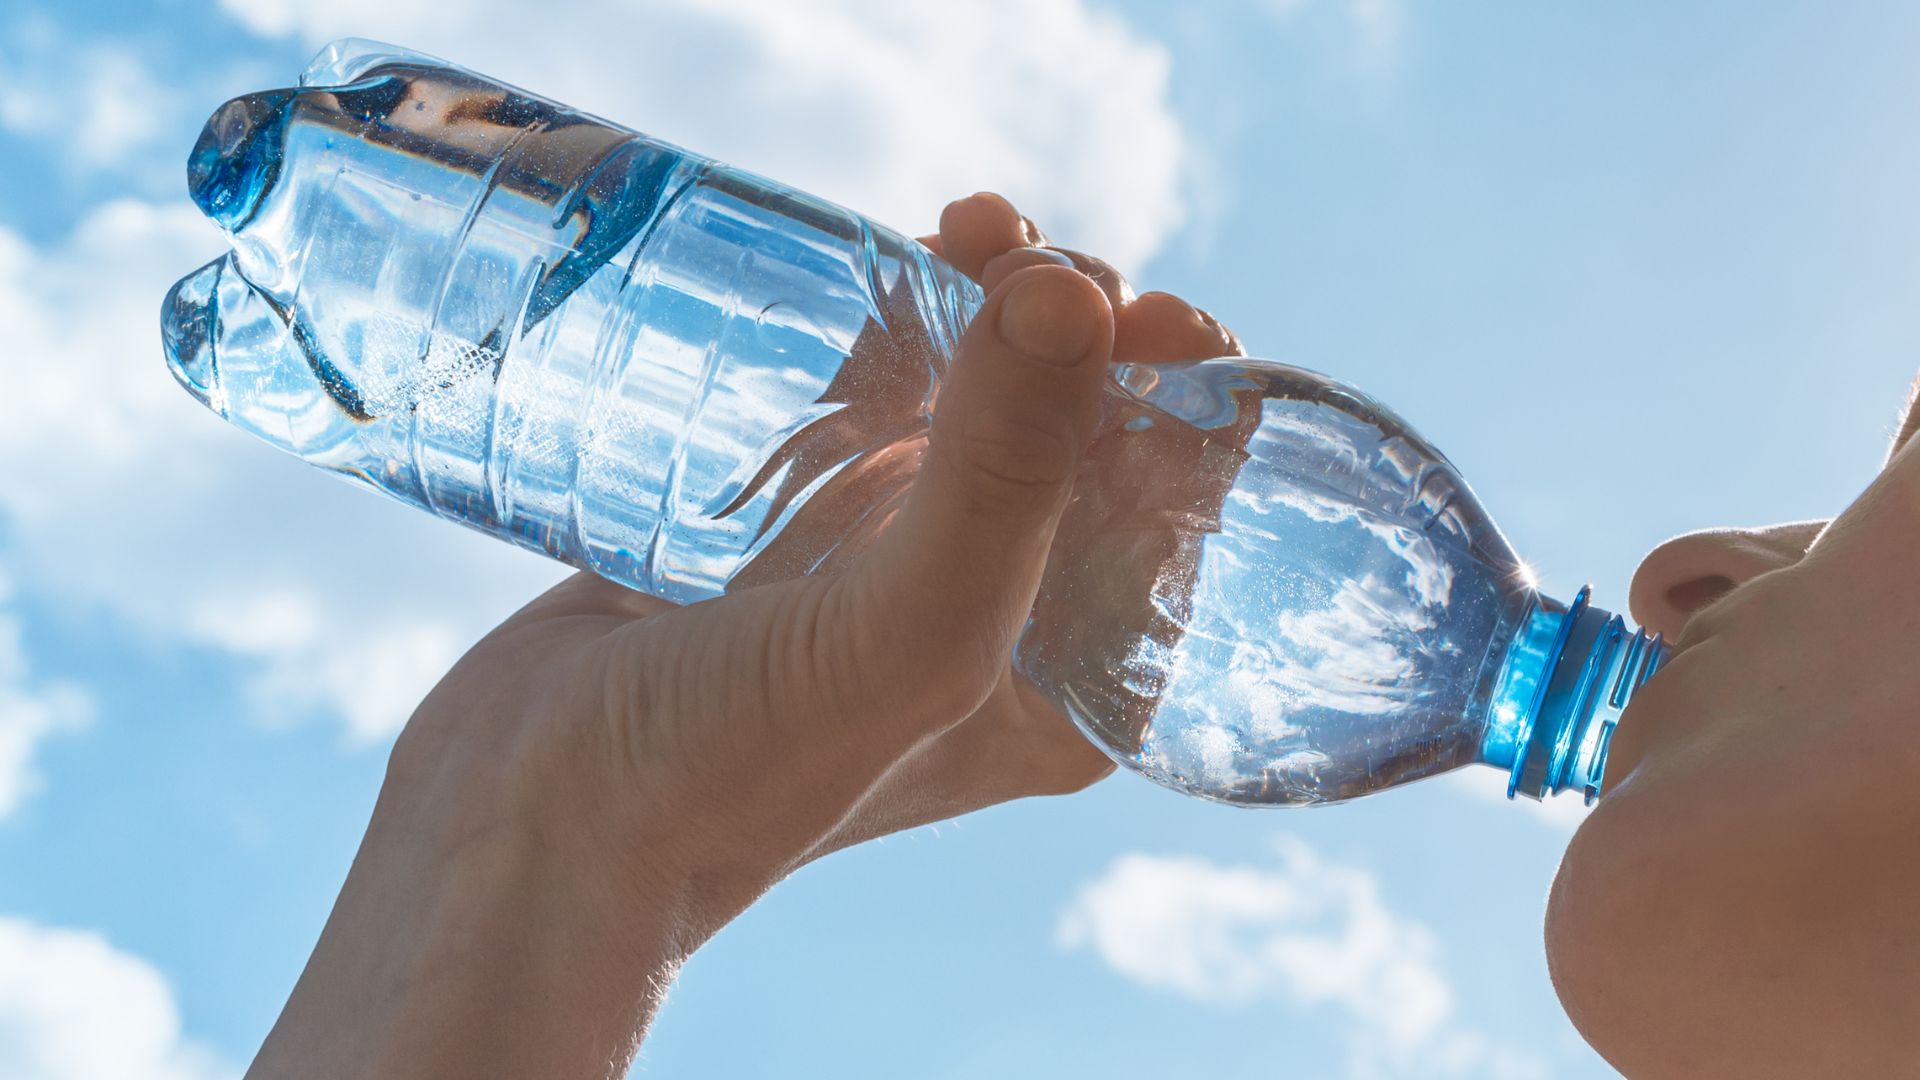 Picie wody przedstawione w koncepcji kobiety, która bierze łyk wody z plastikowej butelki na tle nieba.